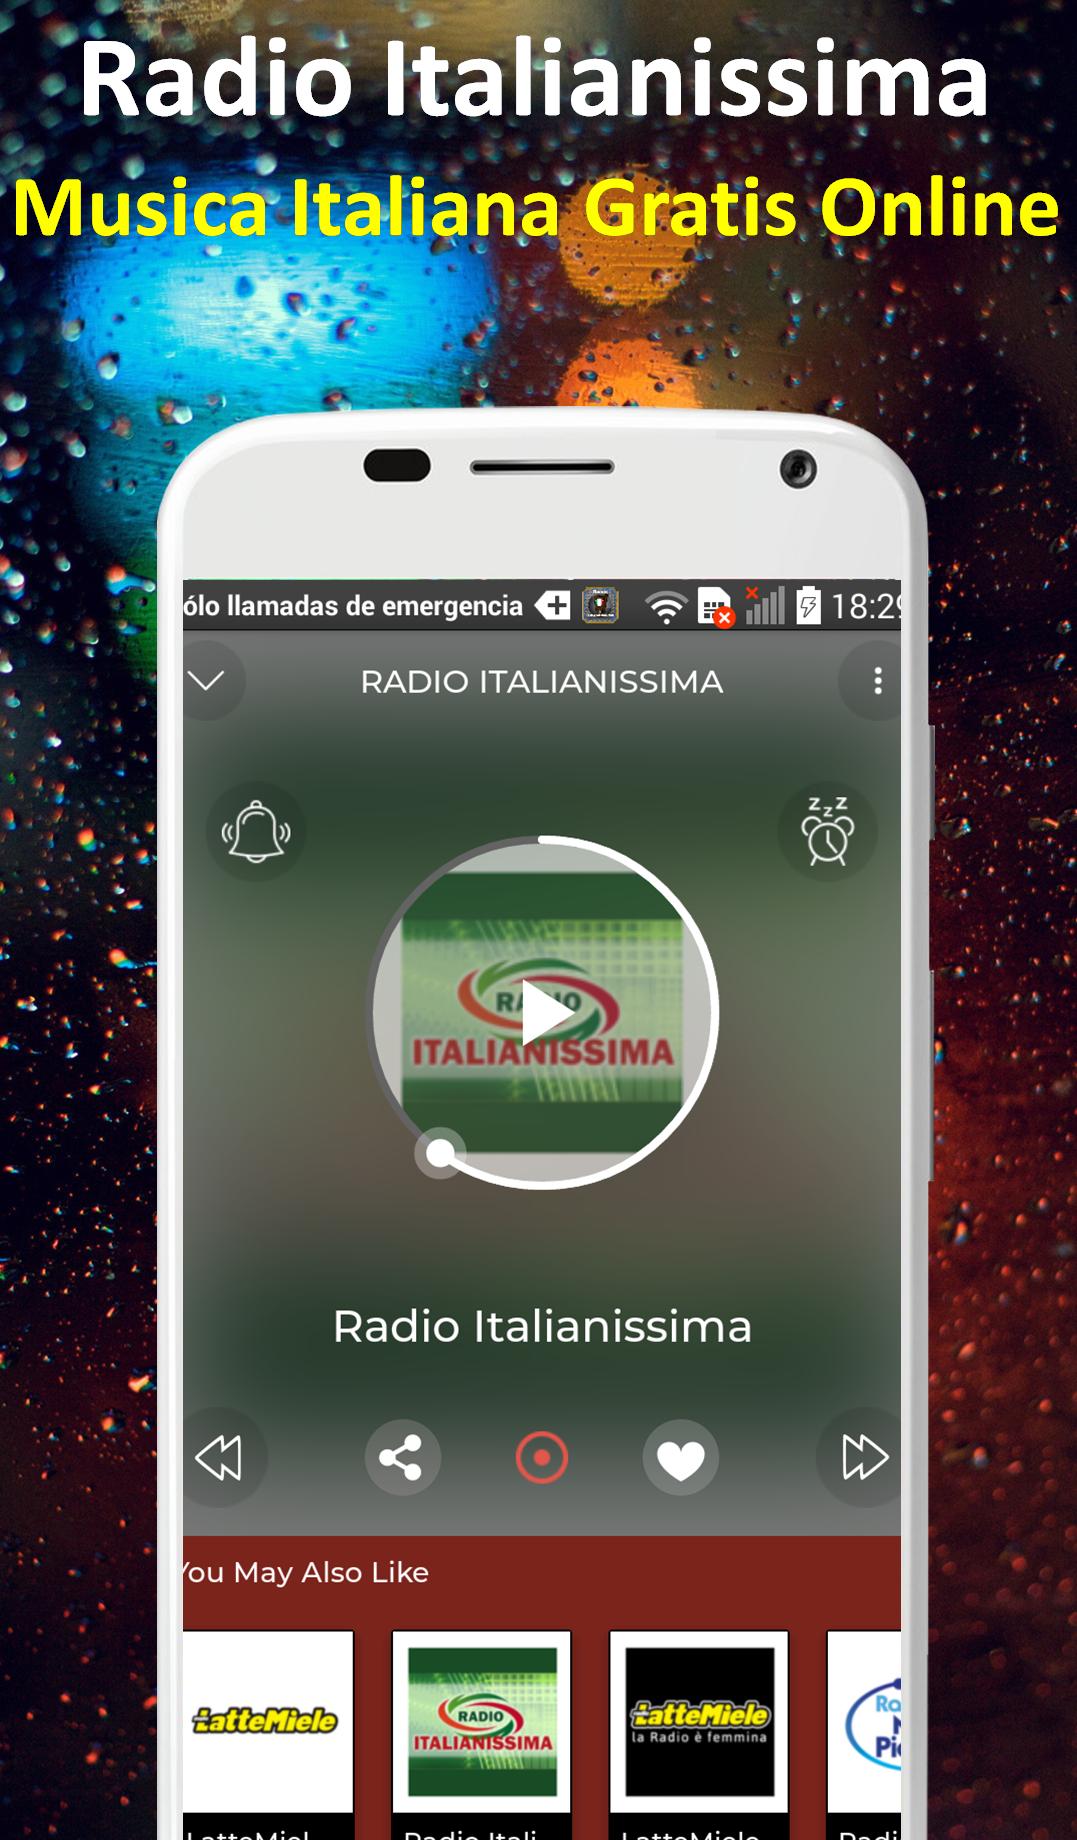 Radio Italianissima Italian Music Free Online 1.1 Screenshot 2